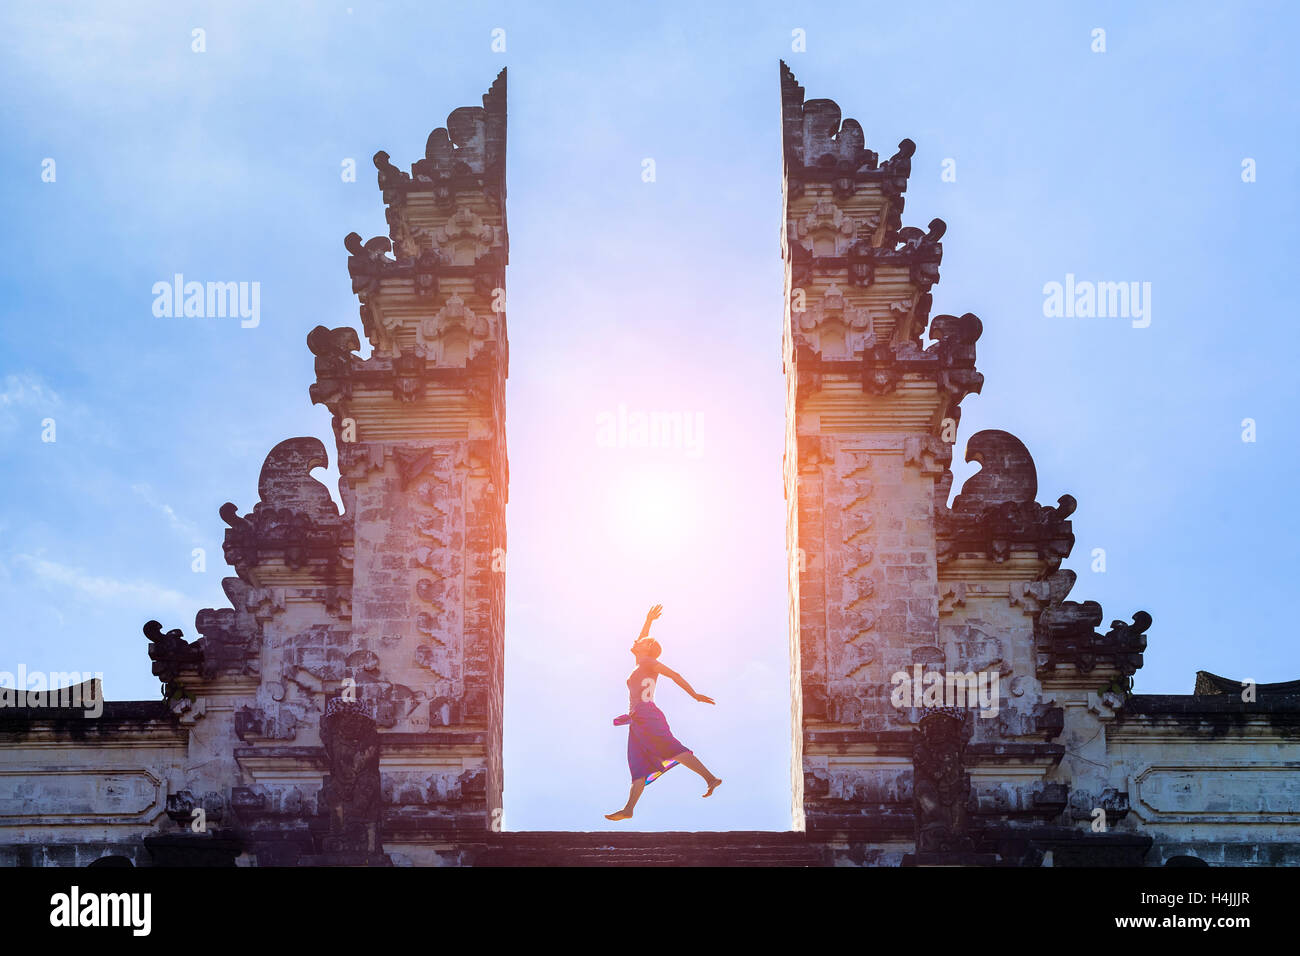 Viajero mujer saltando con energía y vitalidad en la puerta de un templo, Bali, Indonesia Foto de stock